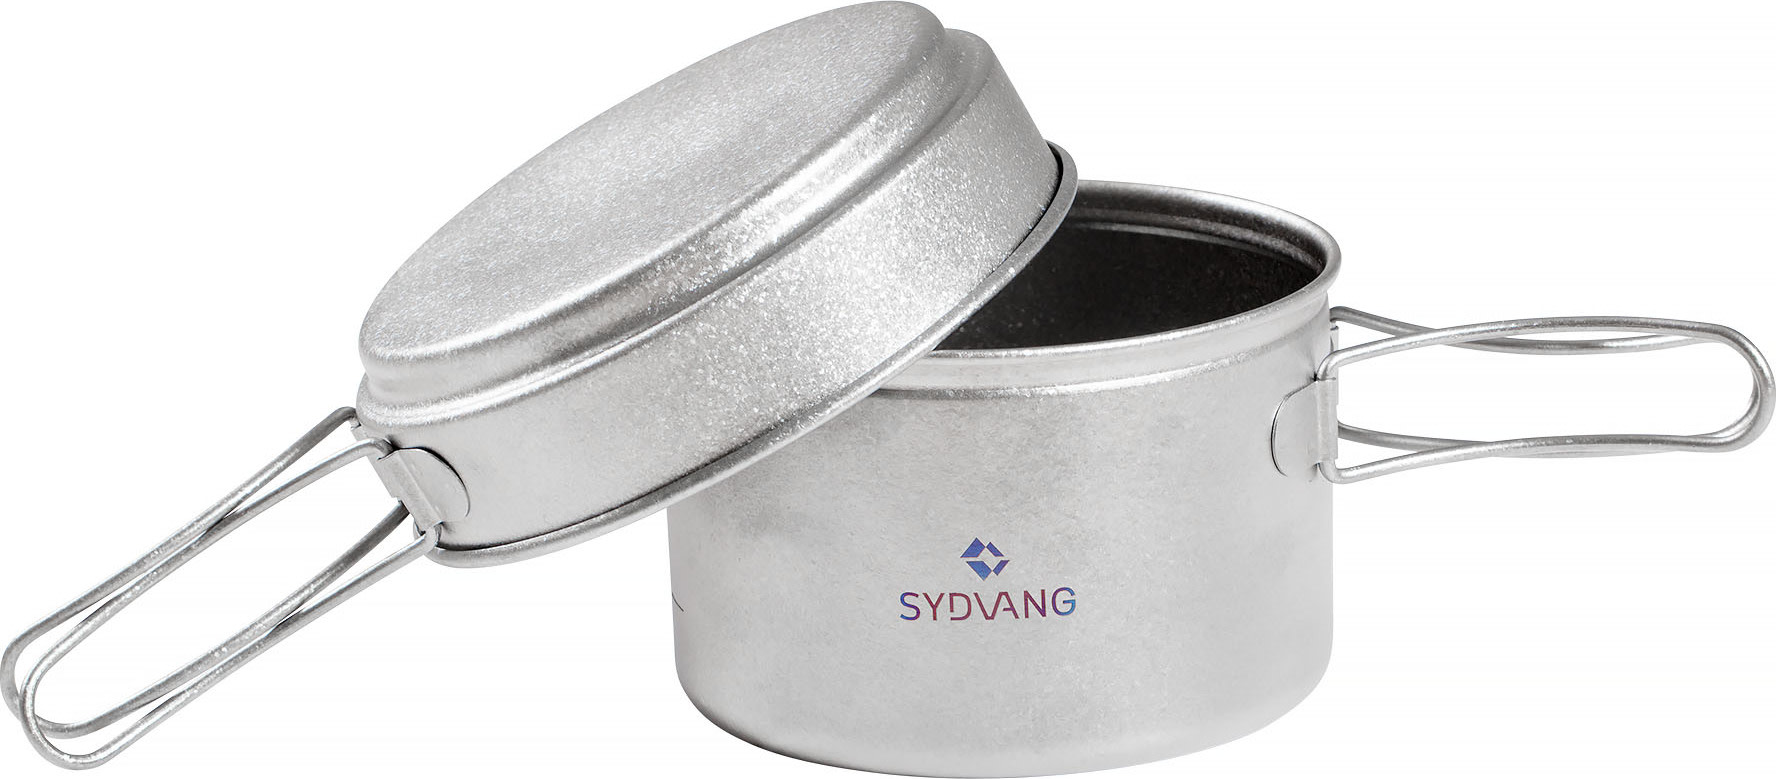 Titan Cookware Silver